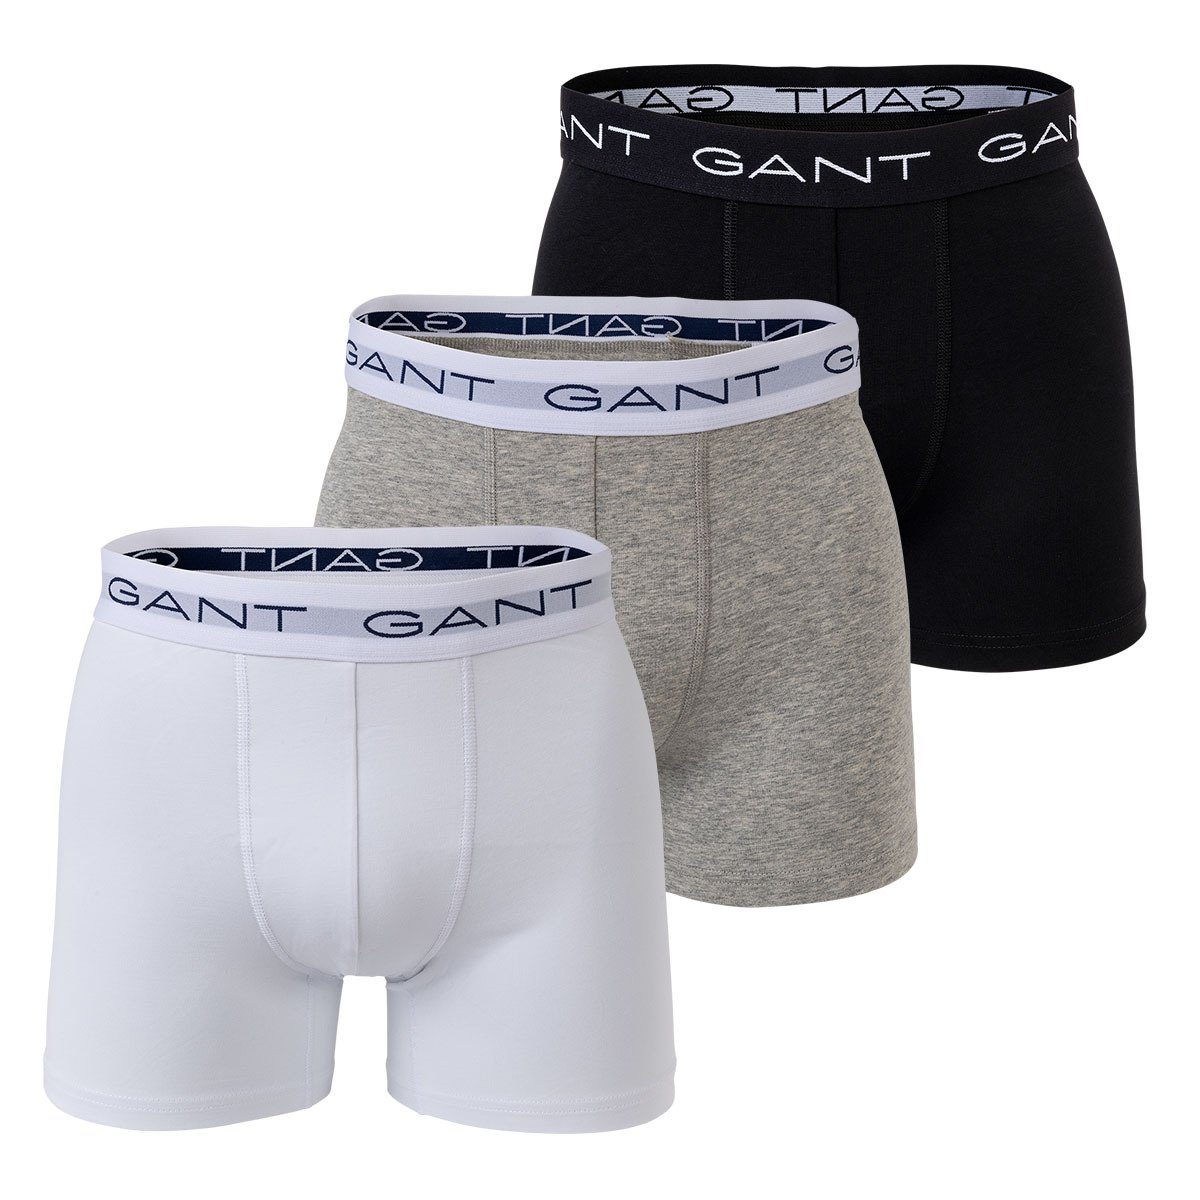 Gant Boxer Herren Boxer Shorts, 3er Pack - Boxer Briefs Grau